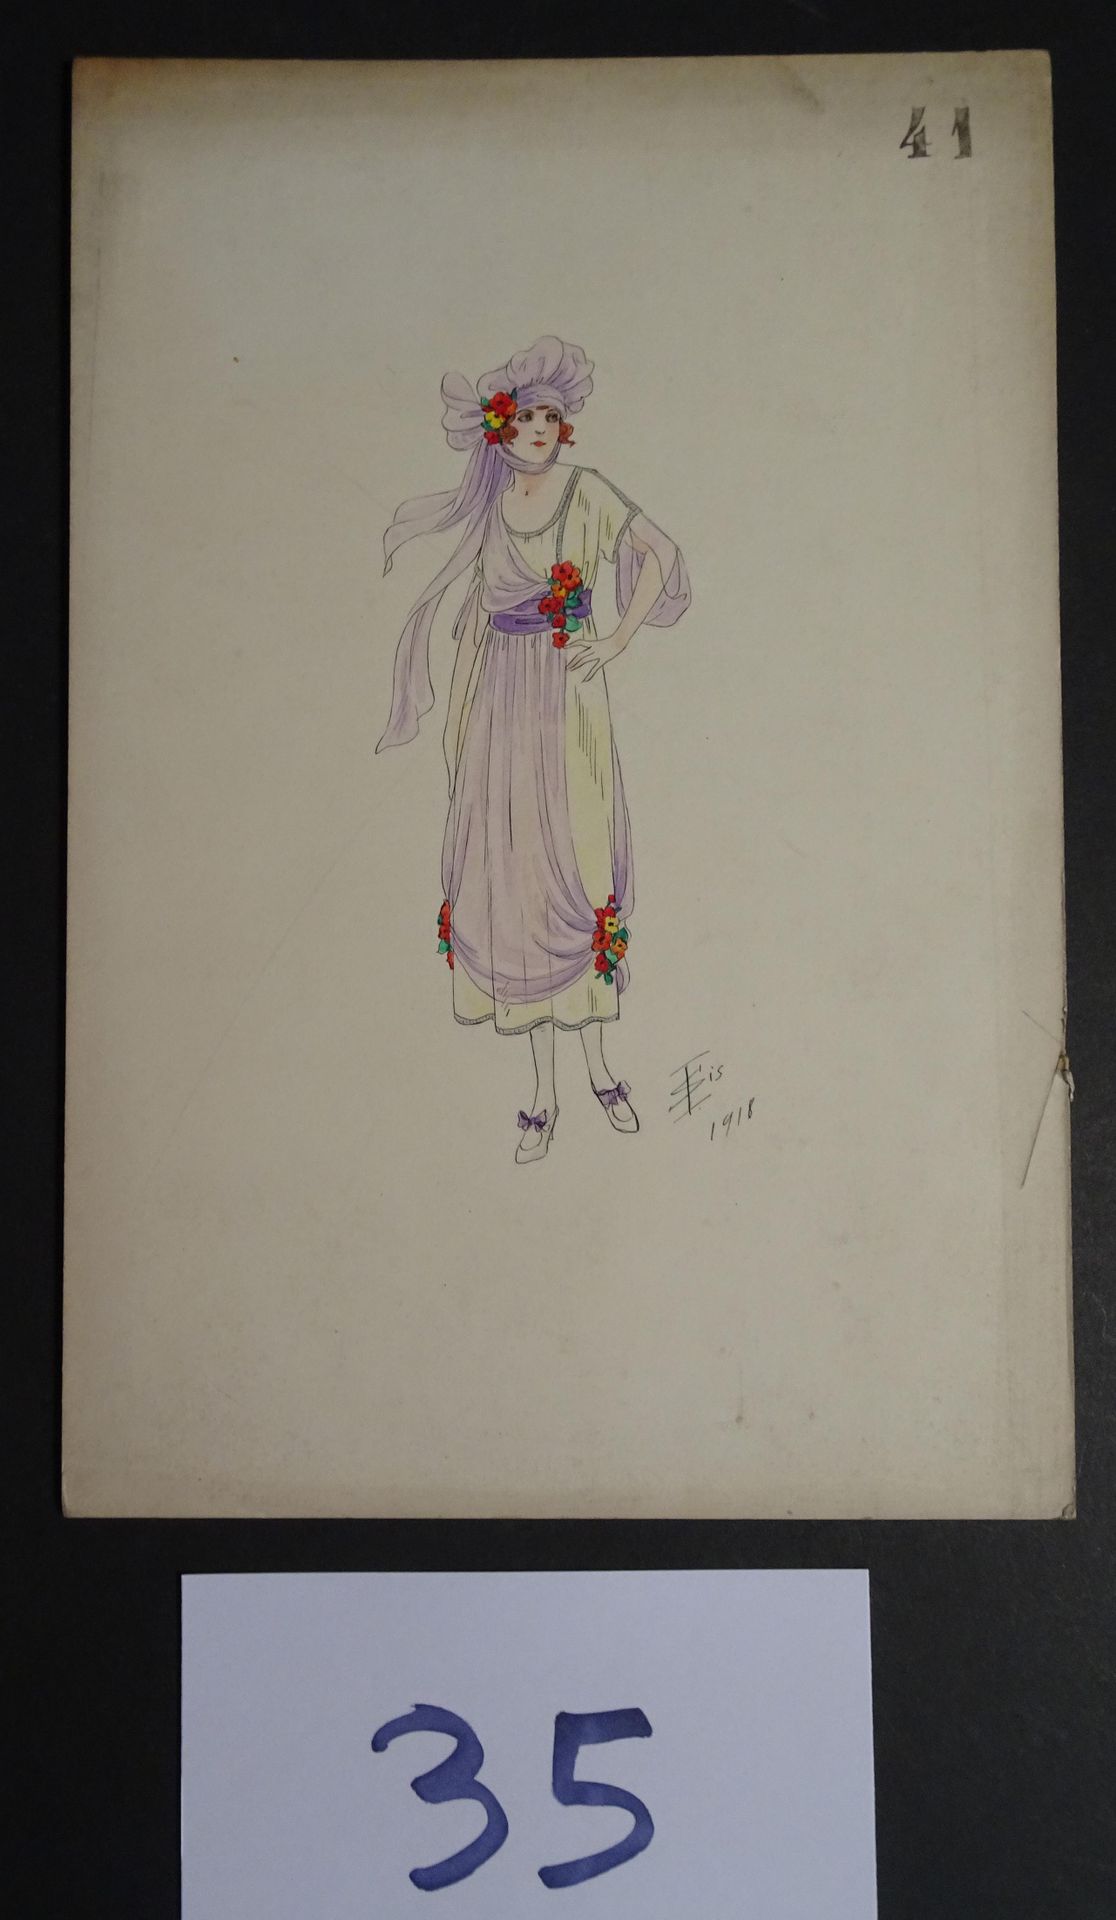 SOKOLOFF SOKOLOFF IGOR (principios del siglo XX) 

"Mujer con vestido púrpura". &hellip;